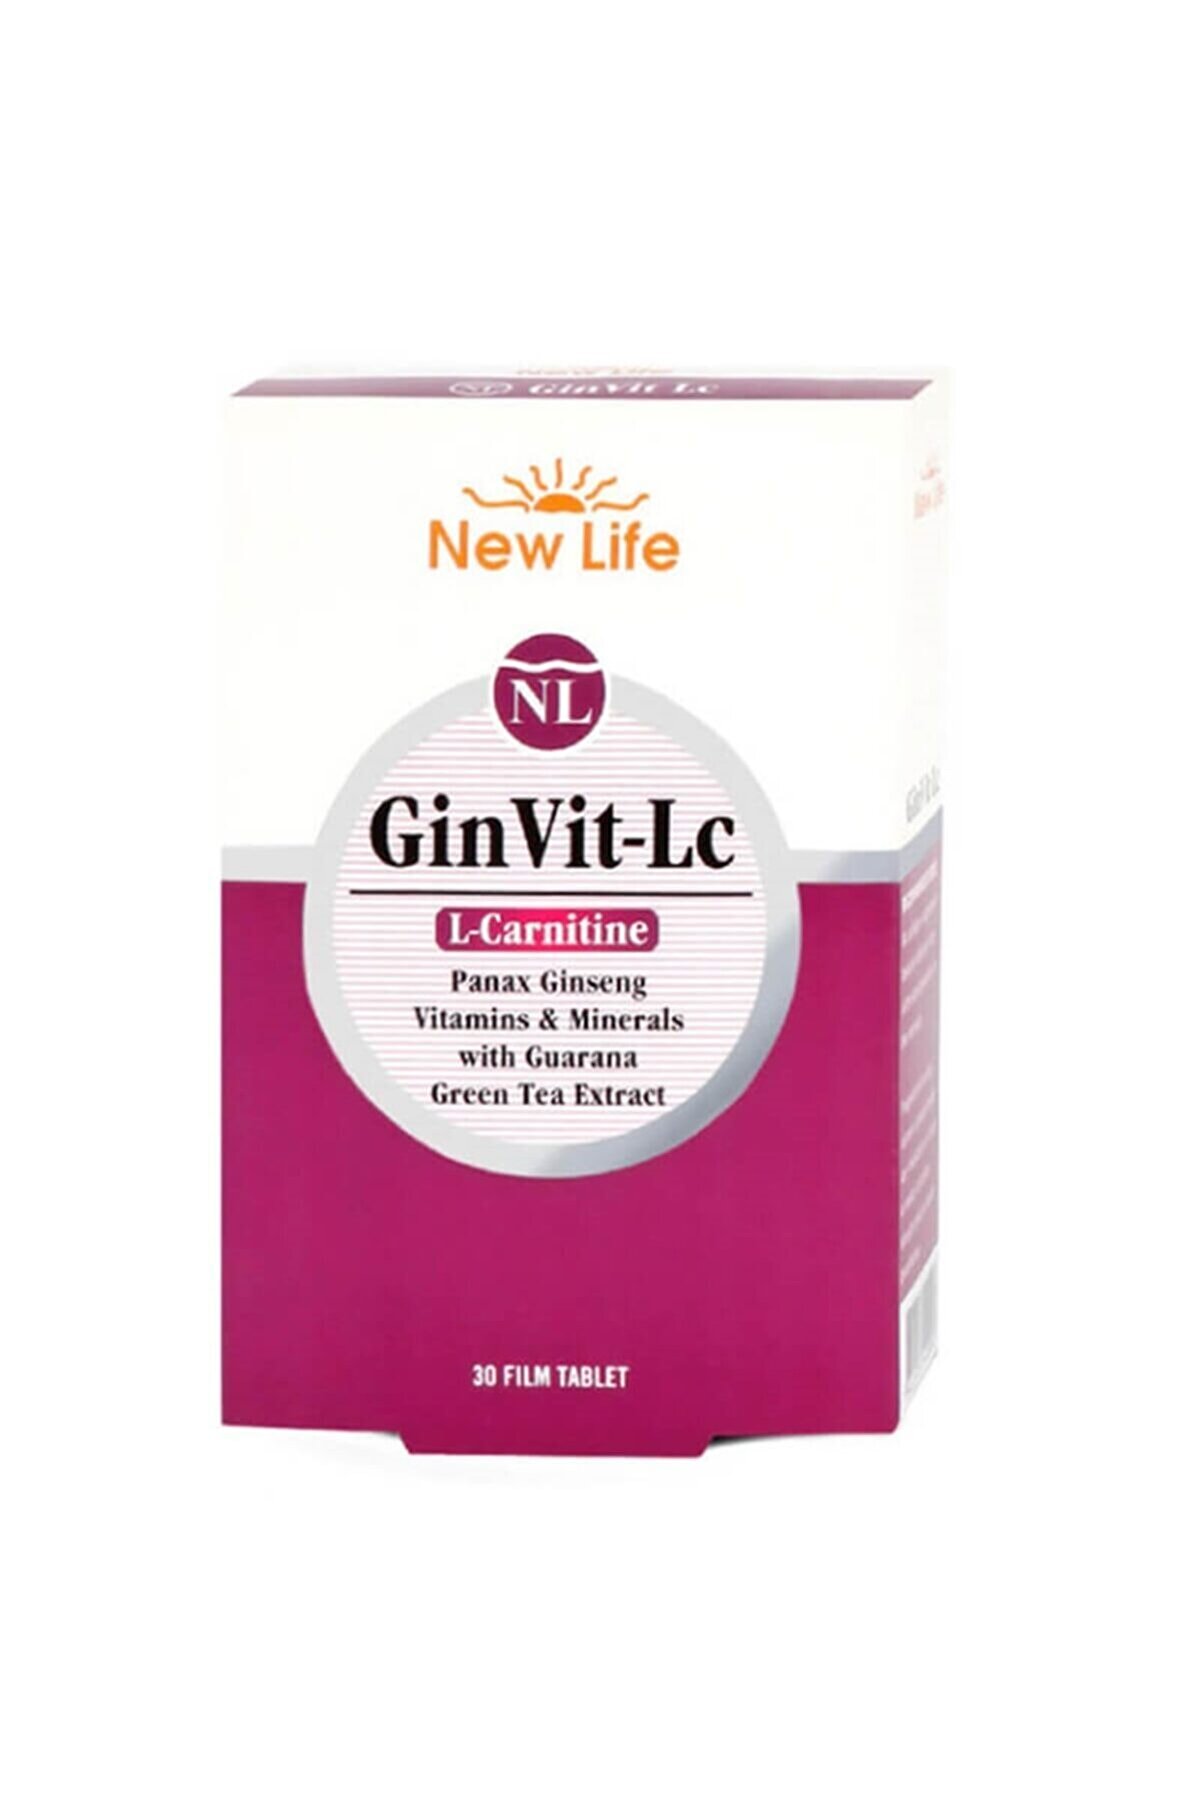 New Life Newlife Ginvit-lc L- Carnitine 30 Film Tablet